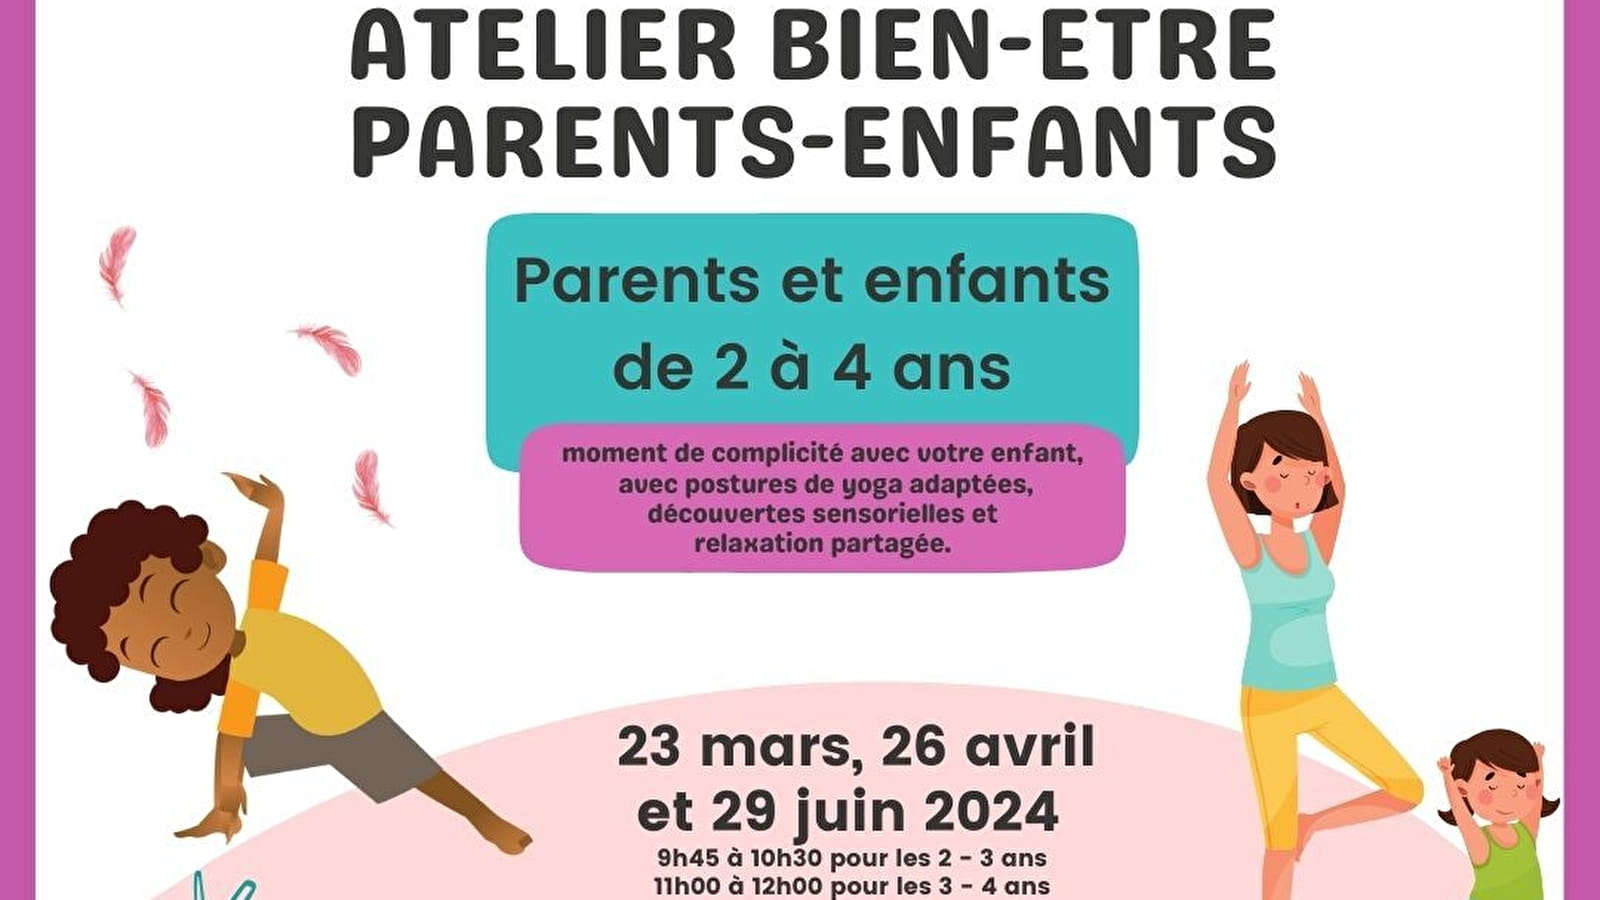 Atelier BIEN ETRE parents-enfants Du 23 mars au 29 juin 2024